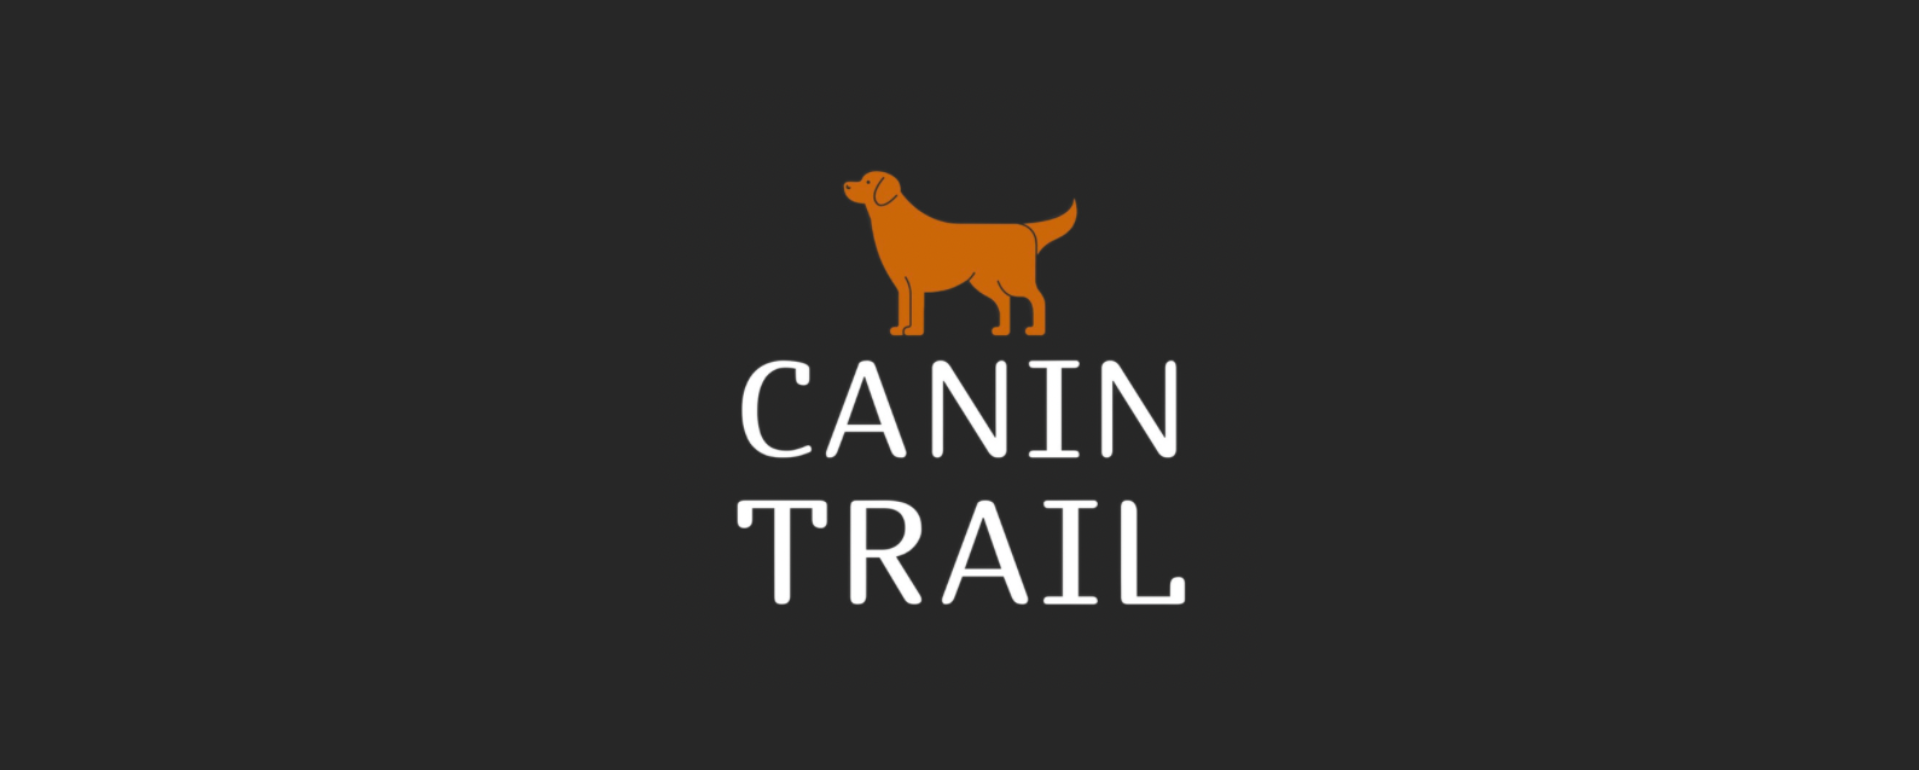 Canin Trail